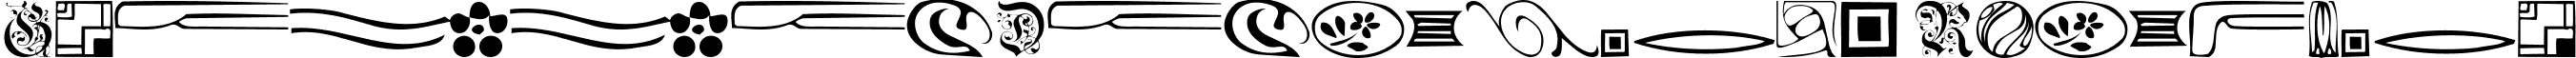 GriffinDingbats Regular font - GriffinDingbats.ttf